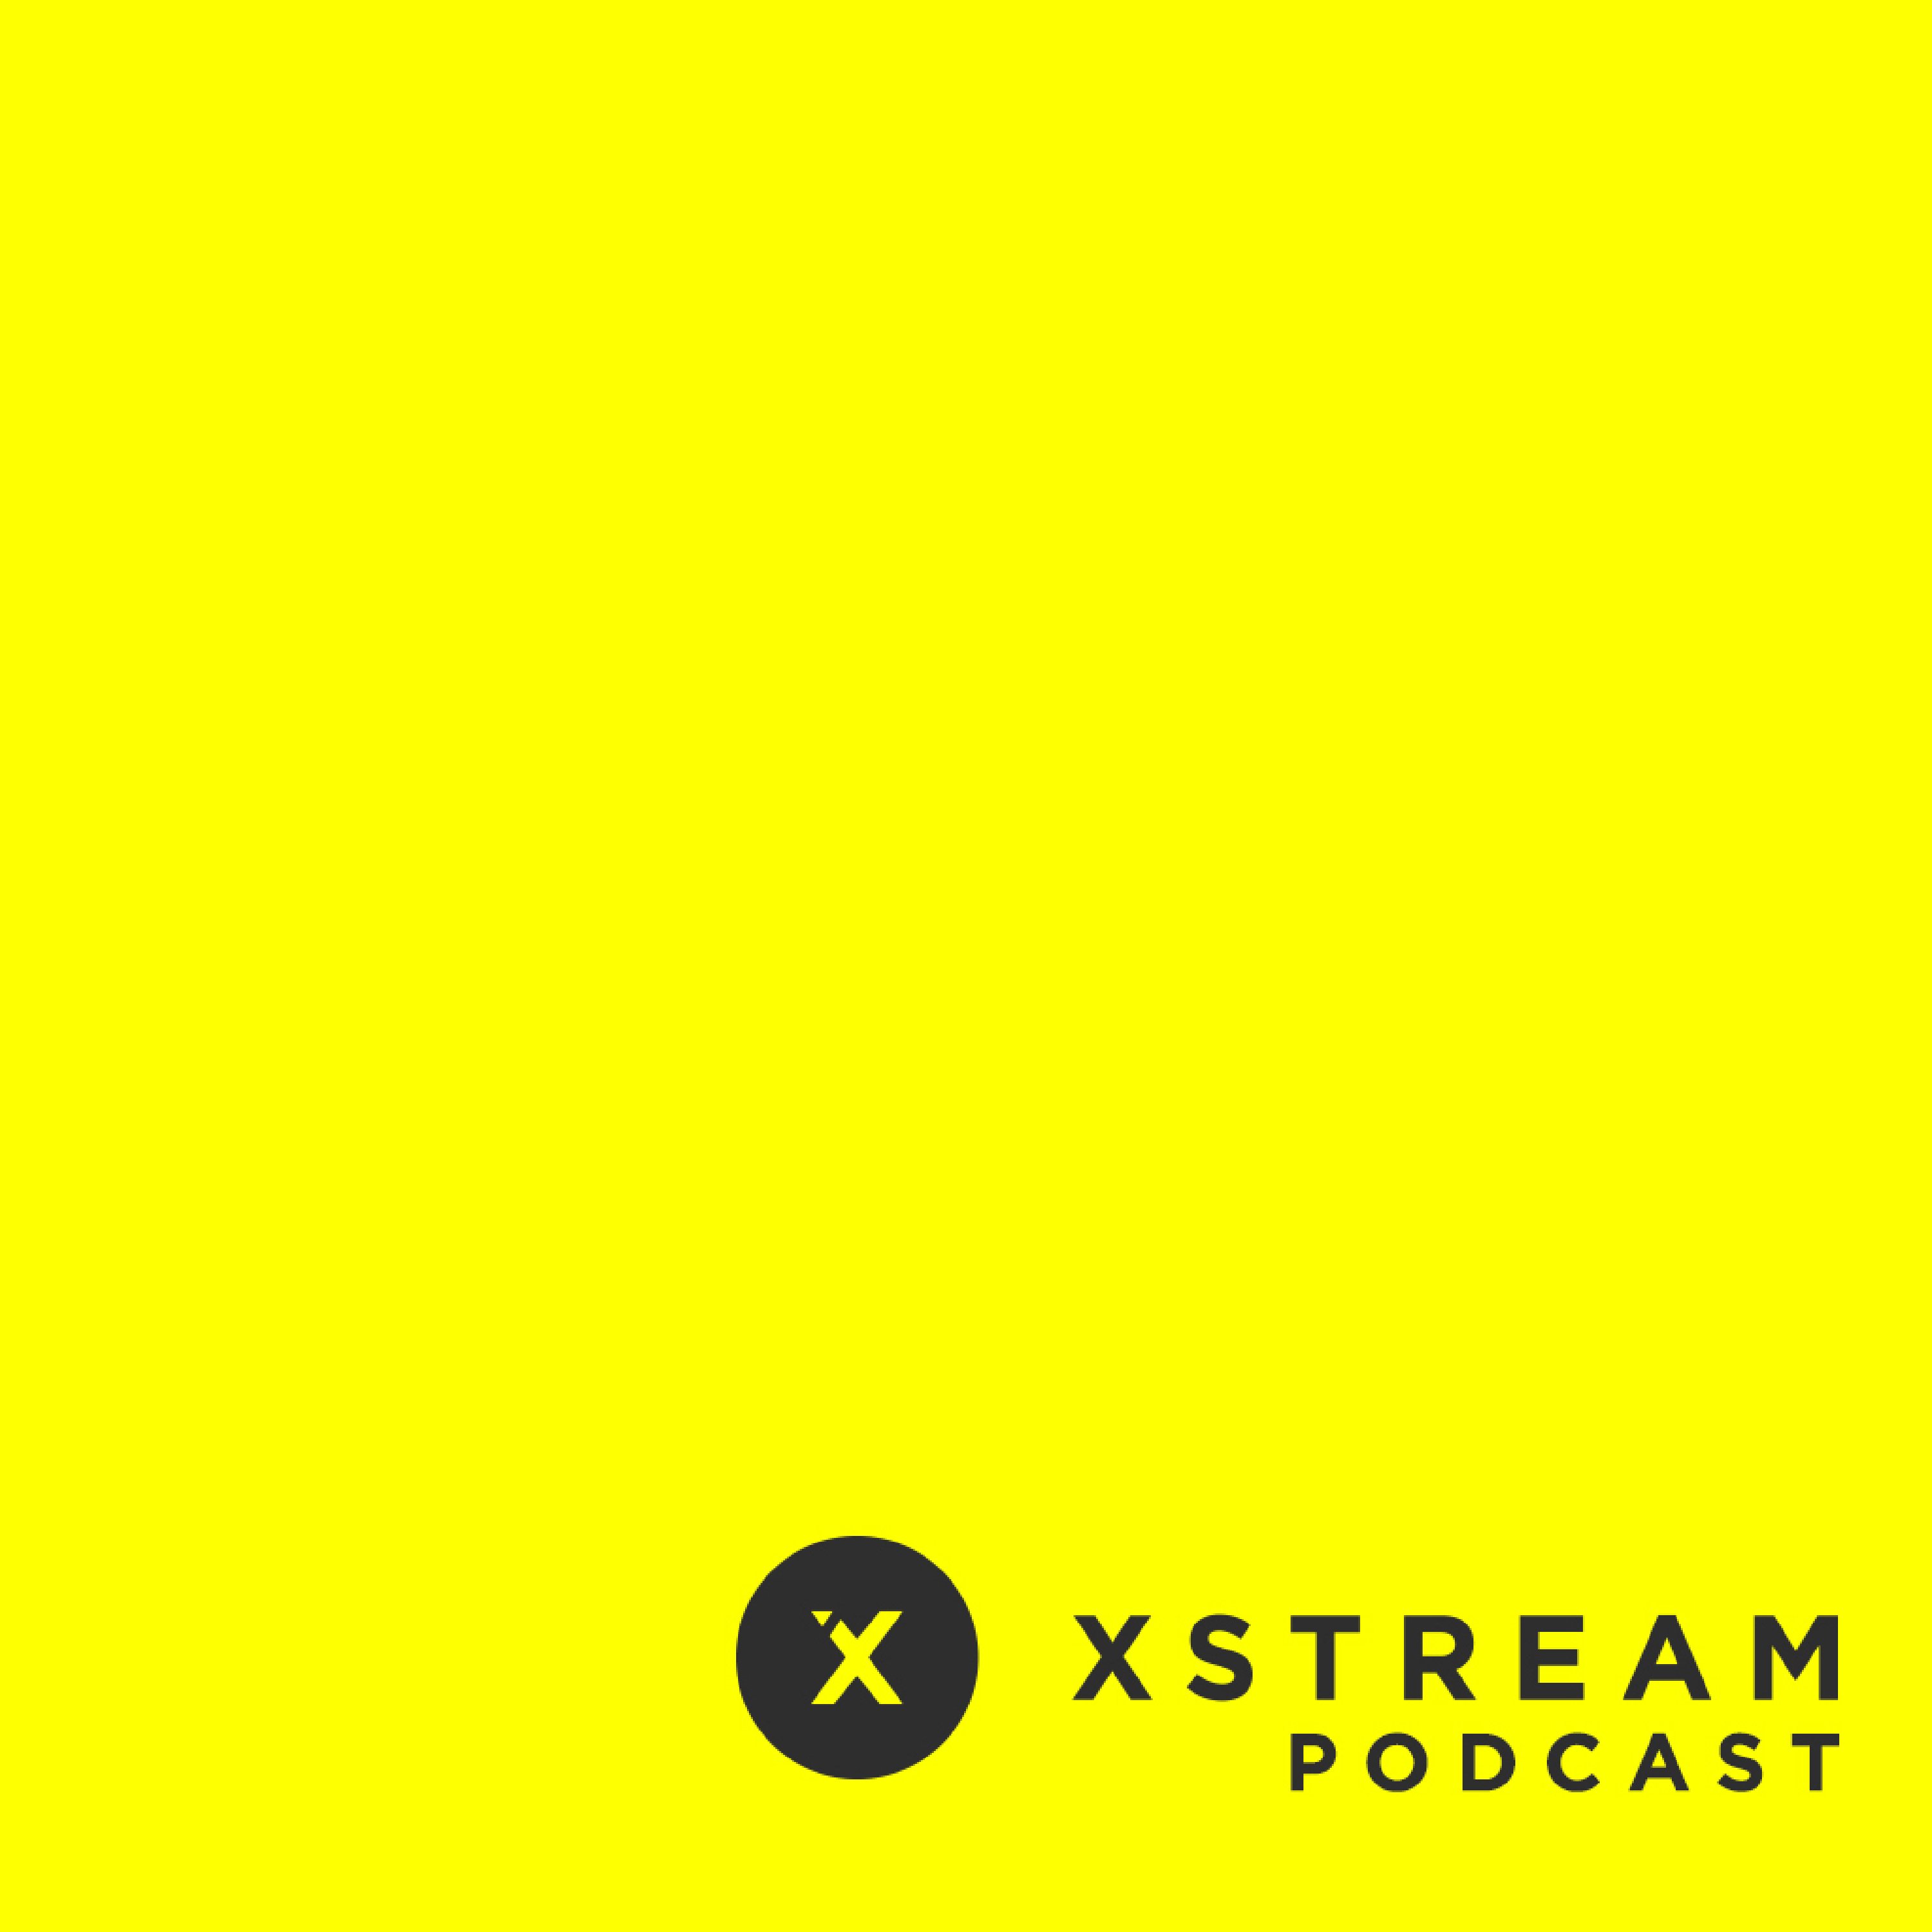 Xstream Podcast